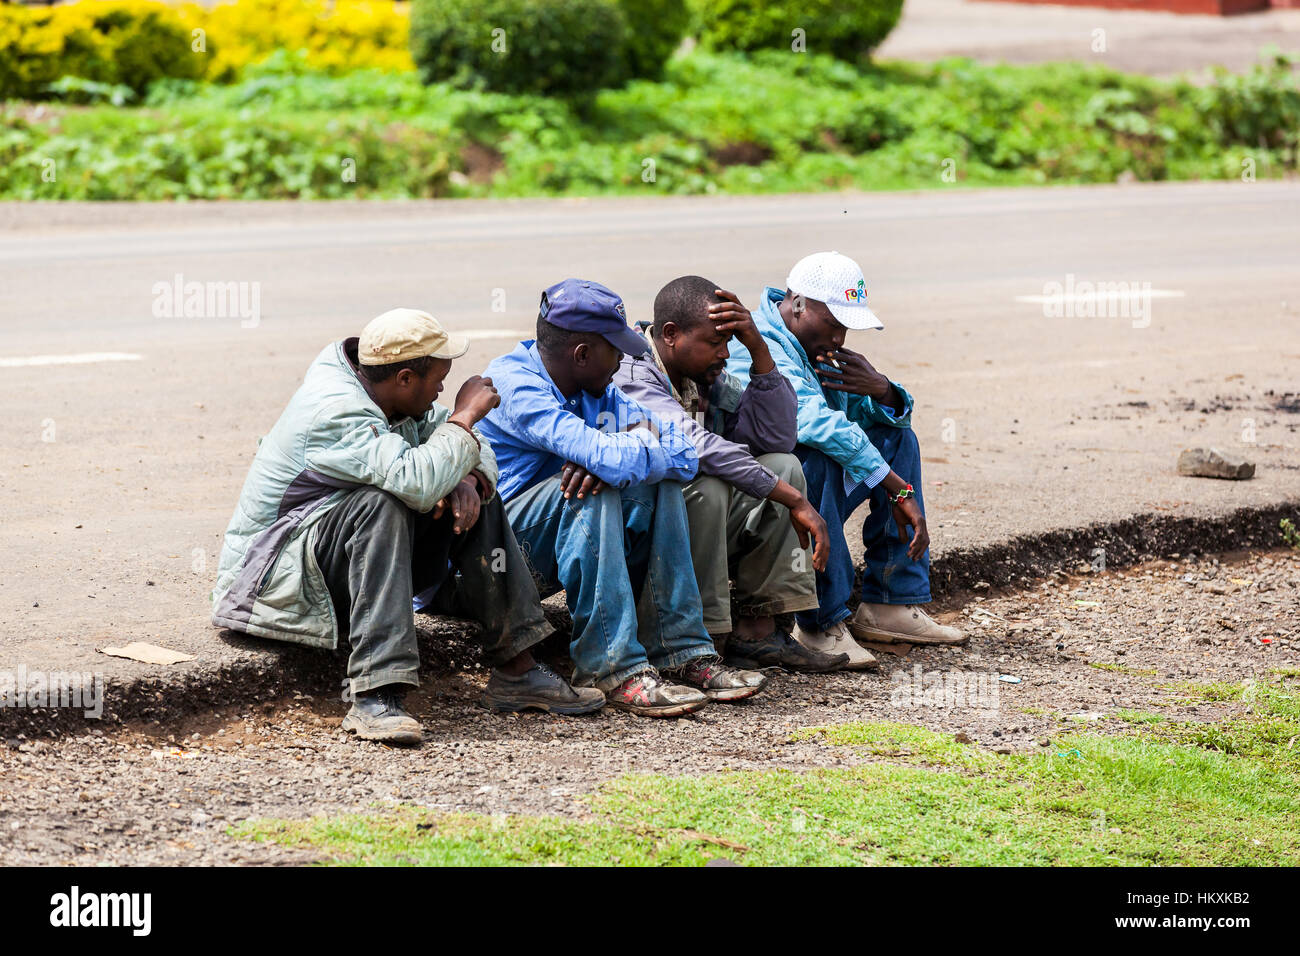 Nairobi, Kenya 31 Décembre 2012 : des hommes, des femmes et des enfants près de la voiture de carburant Banque D'Images